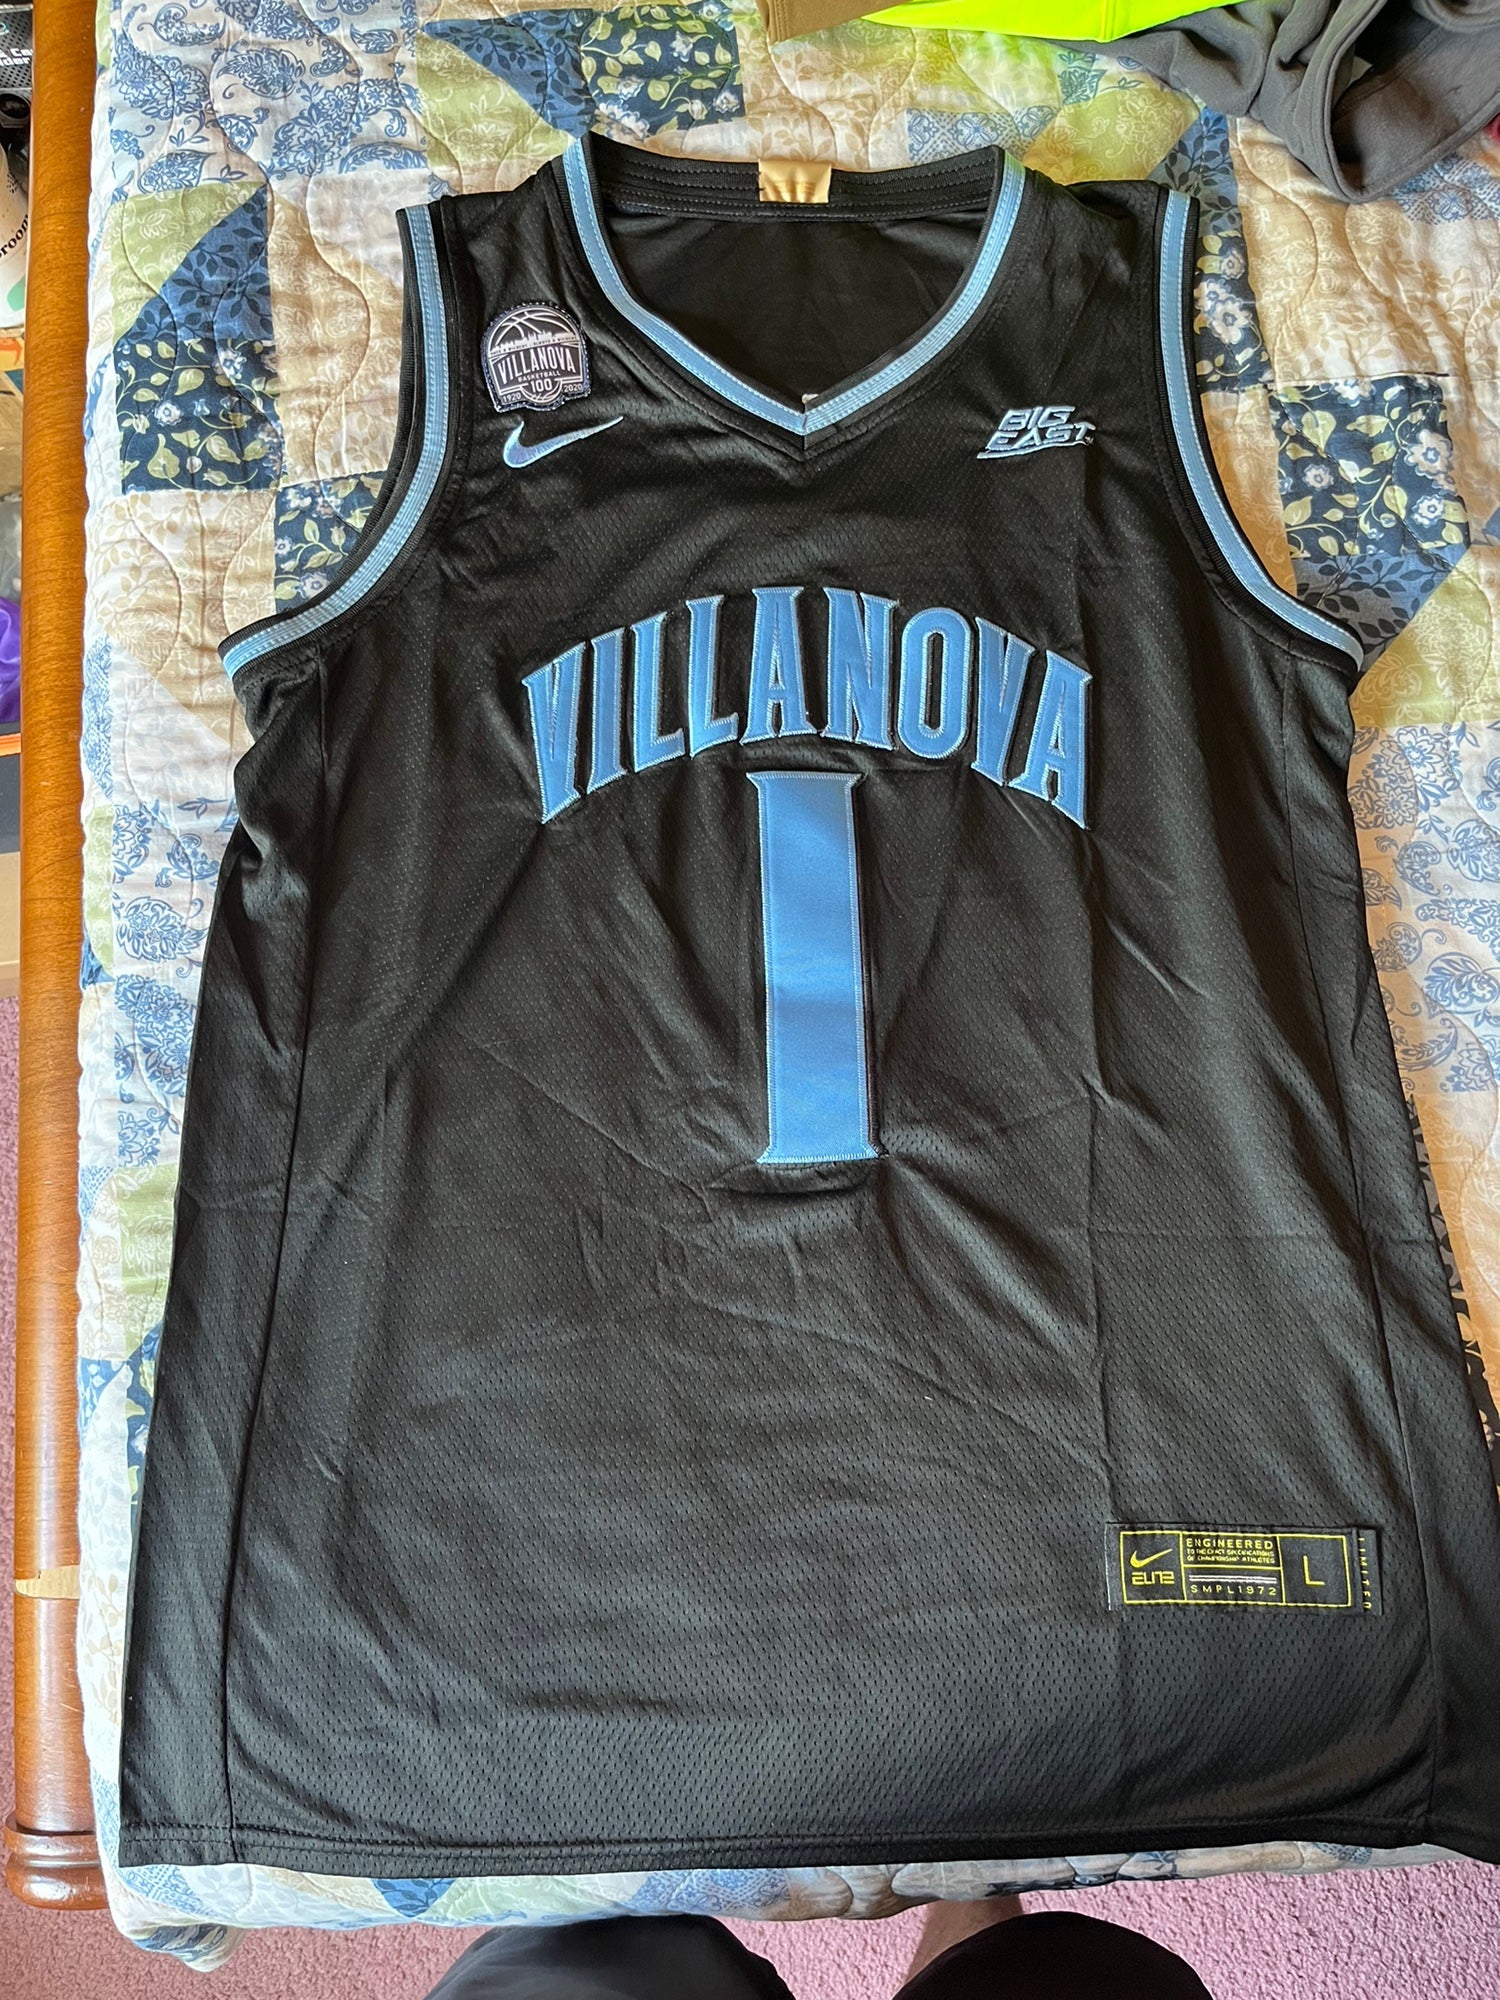 villanova basketball uniforms